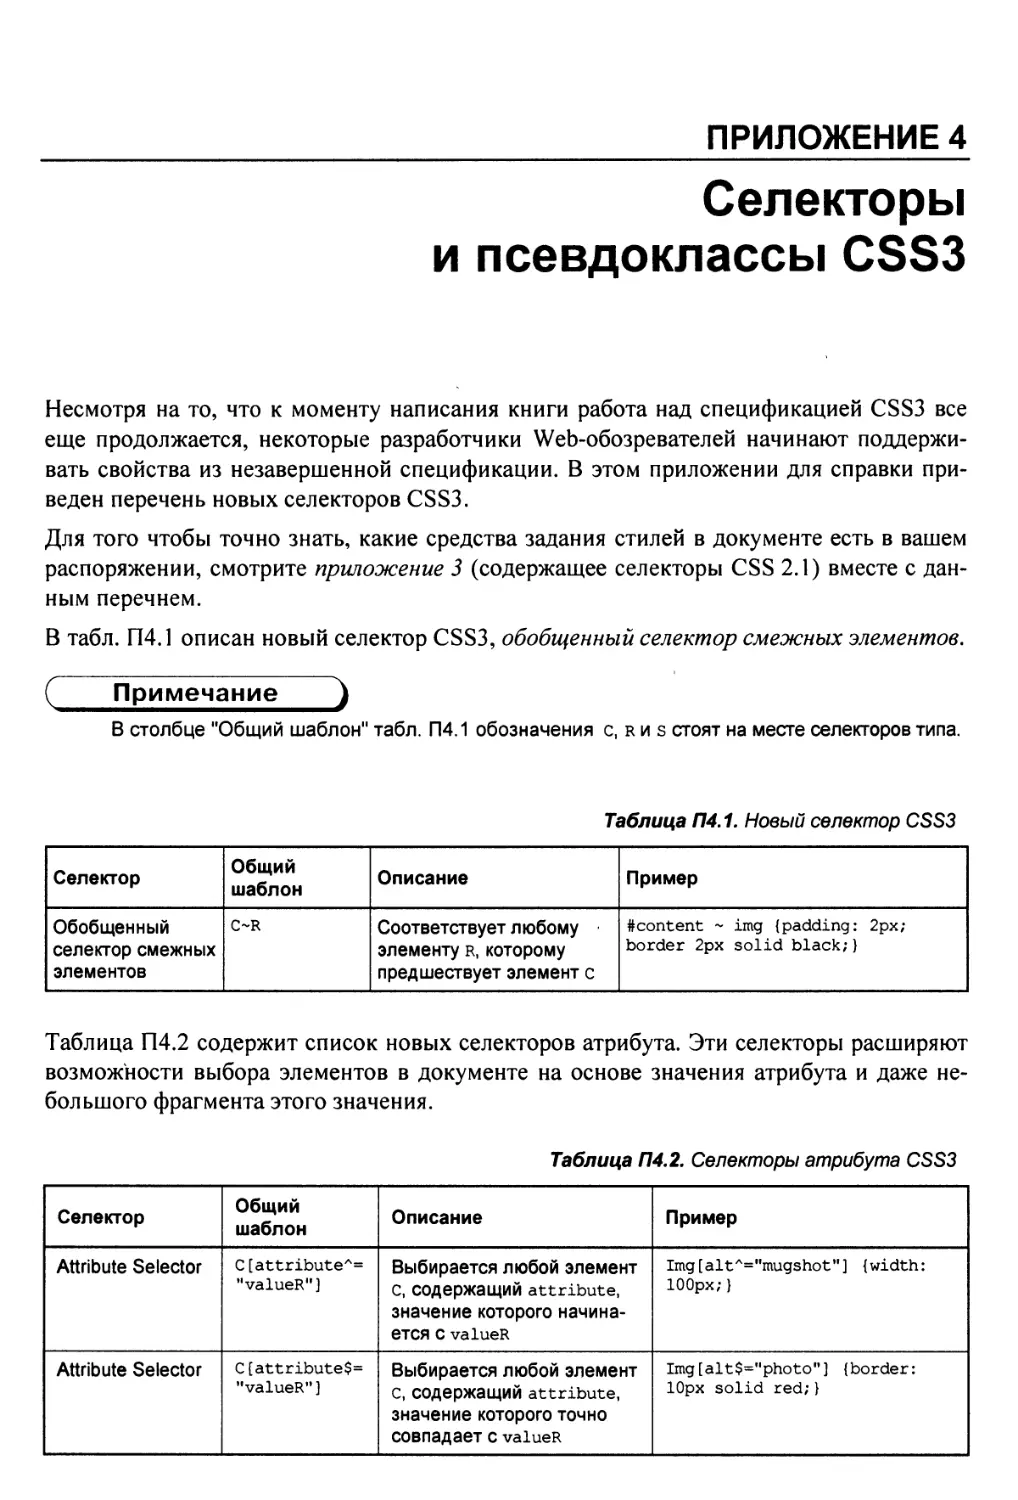 Приложение 4. Селекторы и псевдоклассы CSS3